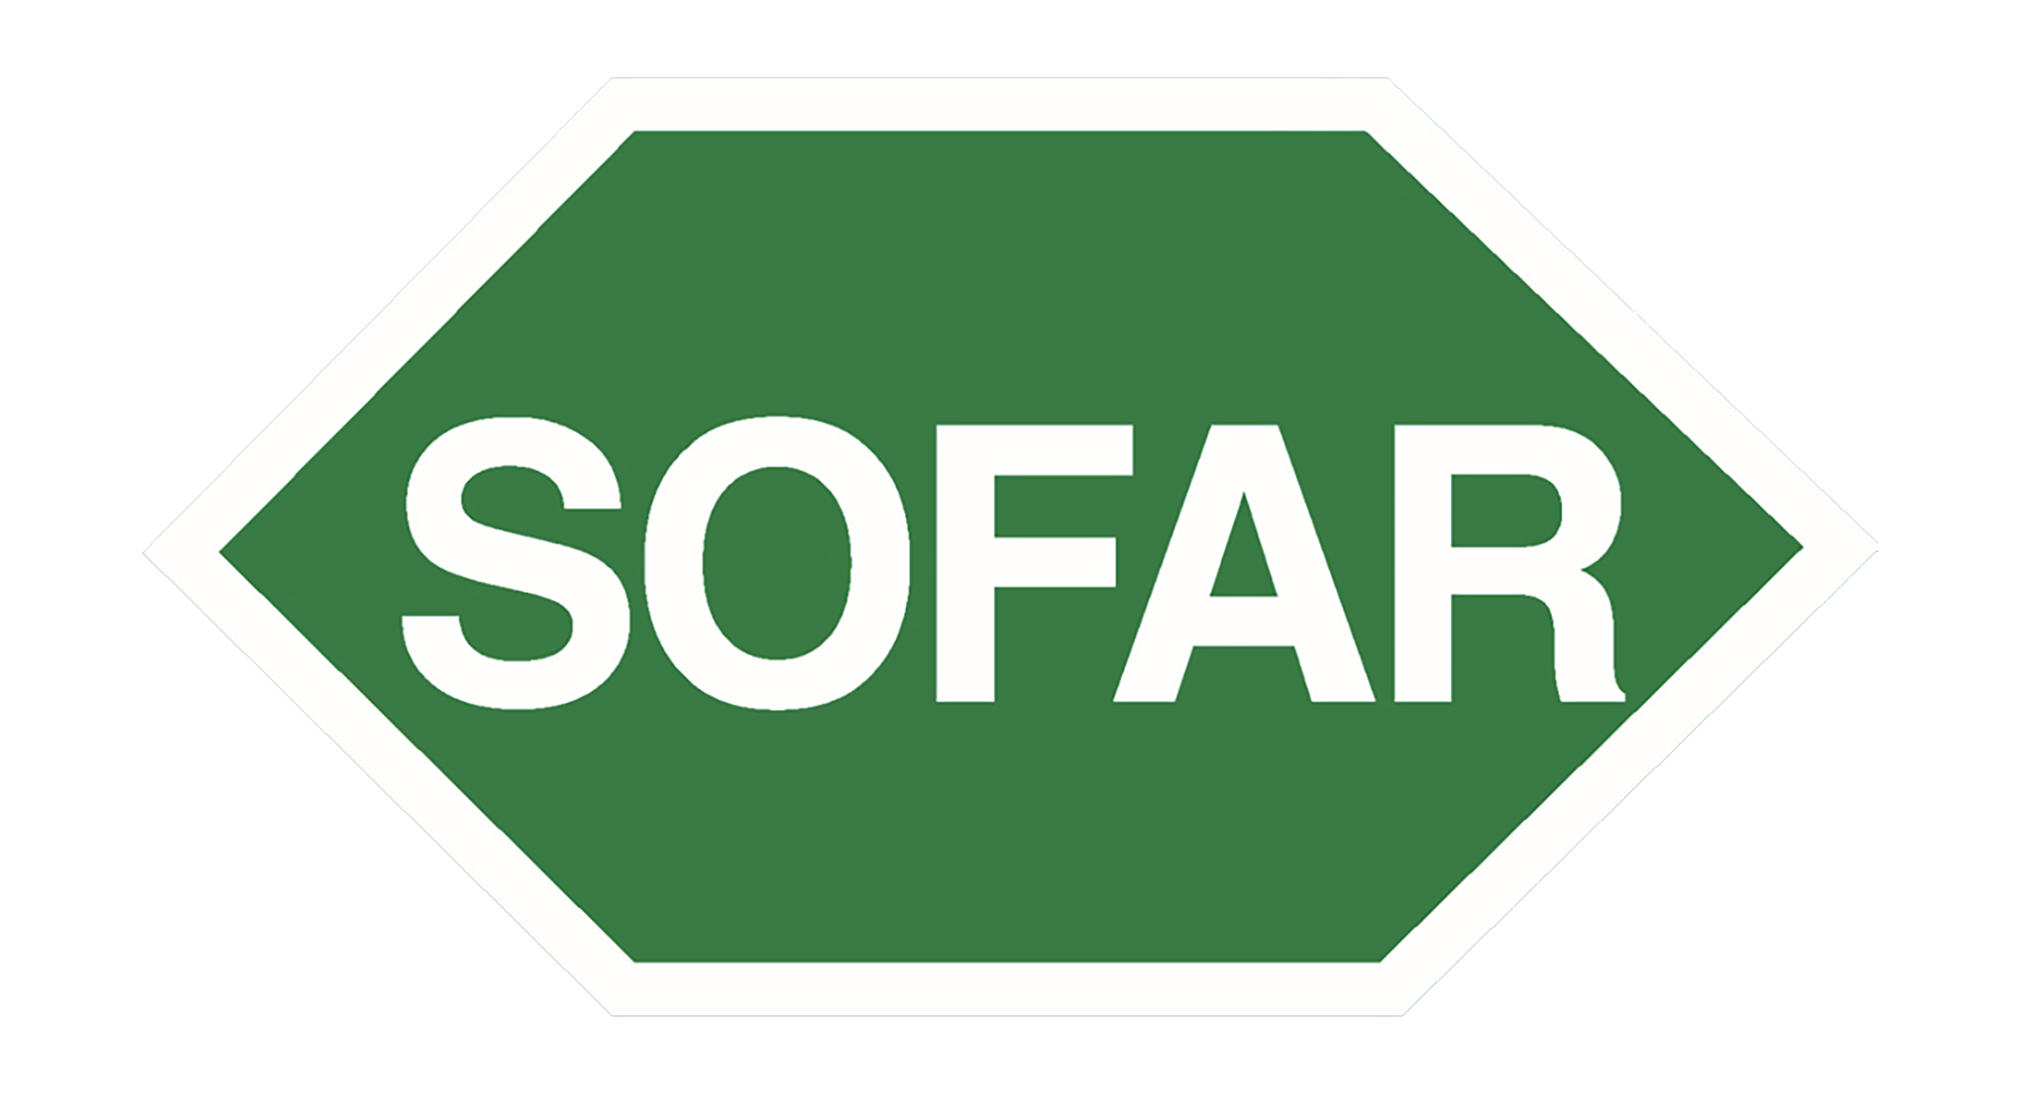 Sofar